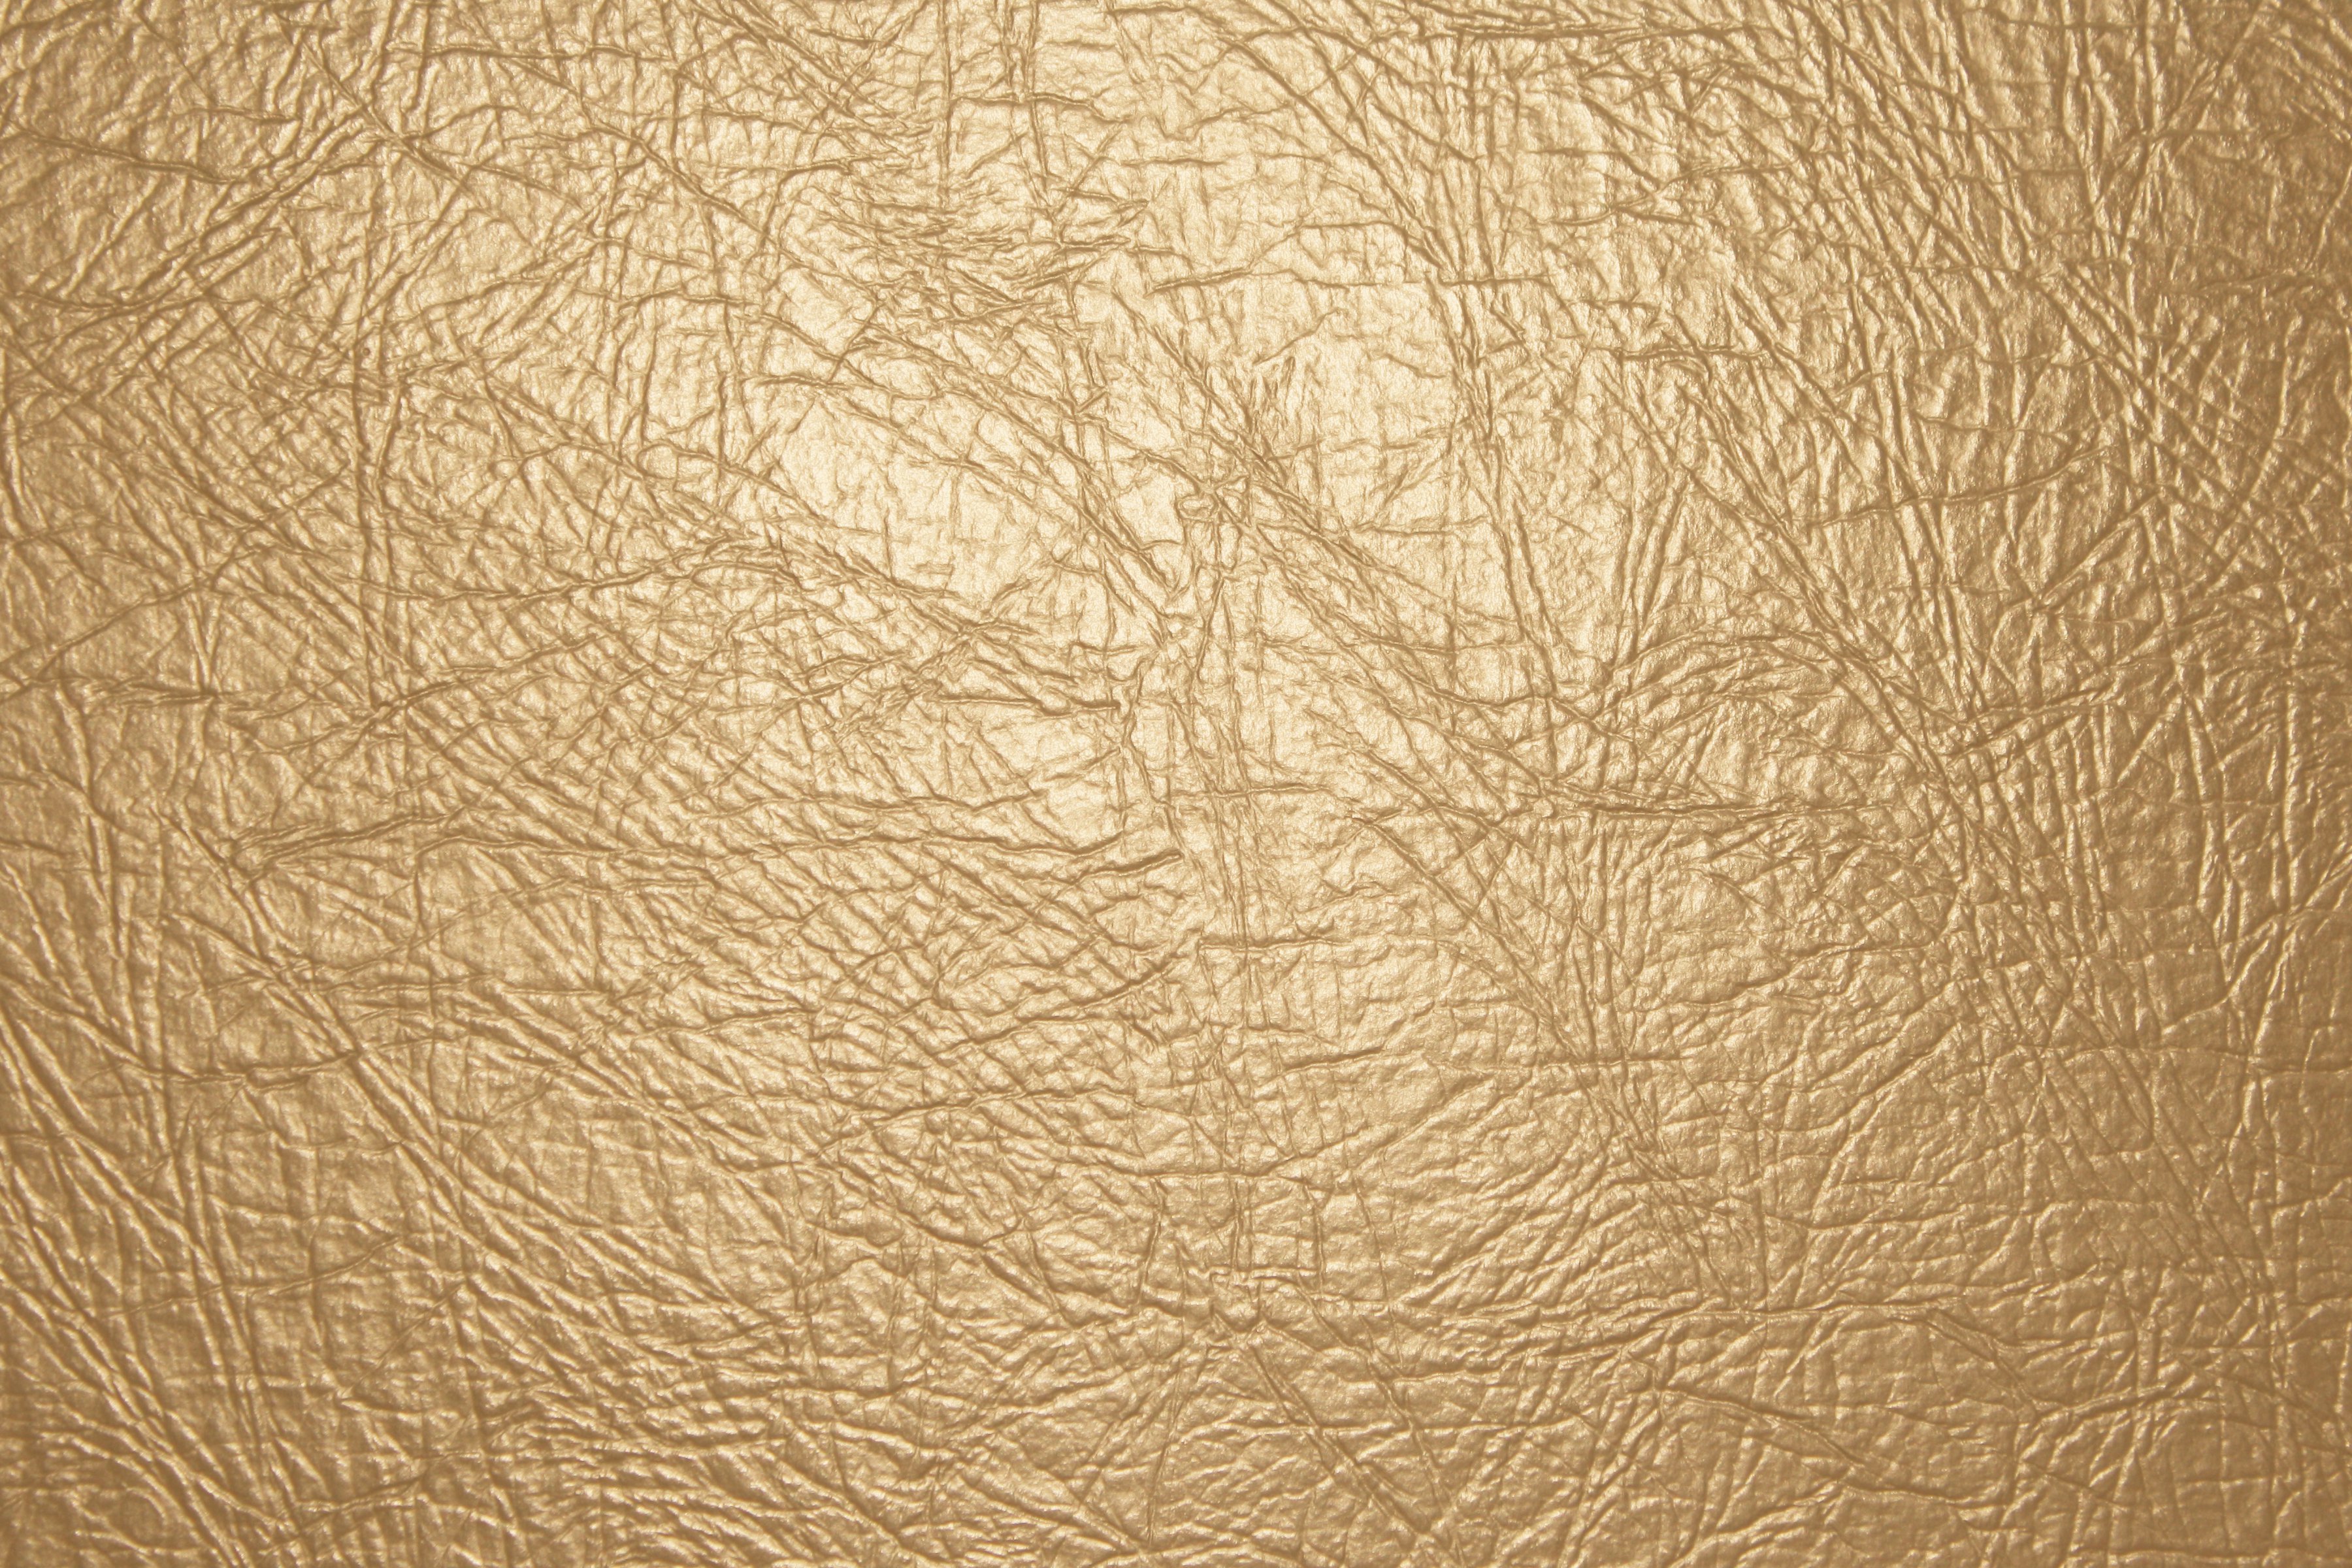 Tan Leather Texture Close Up Picture Photograph Photos Public